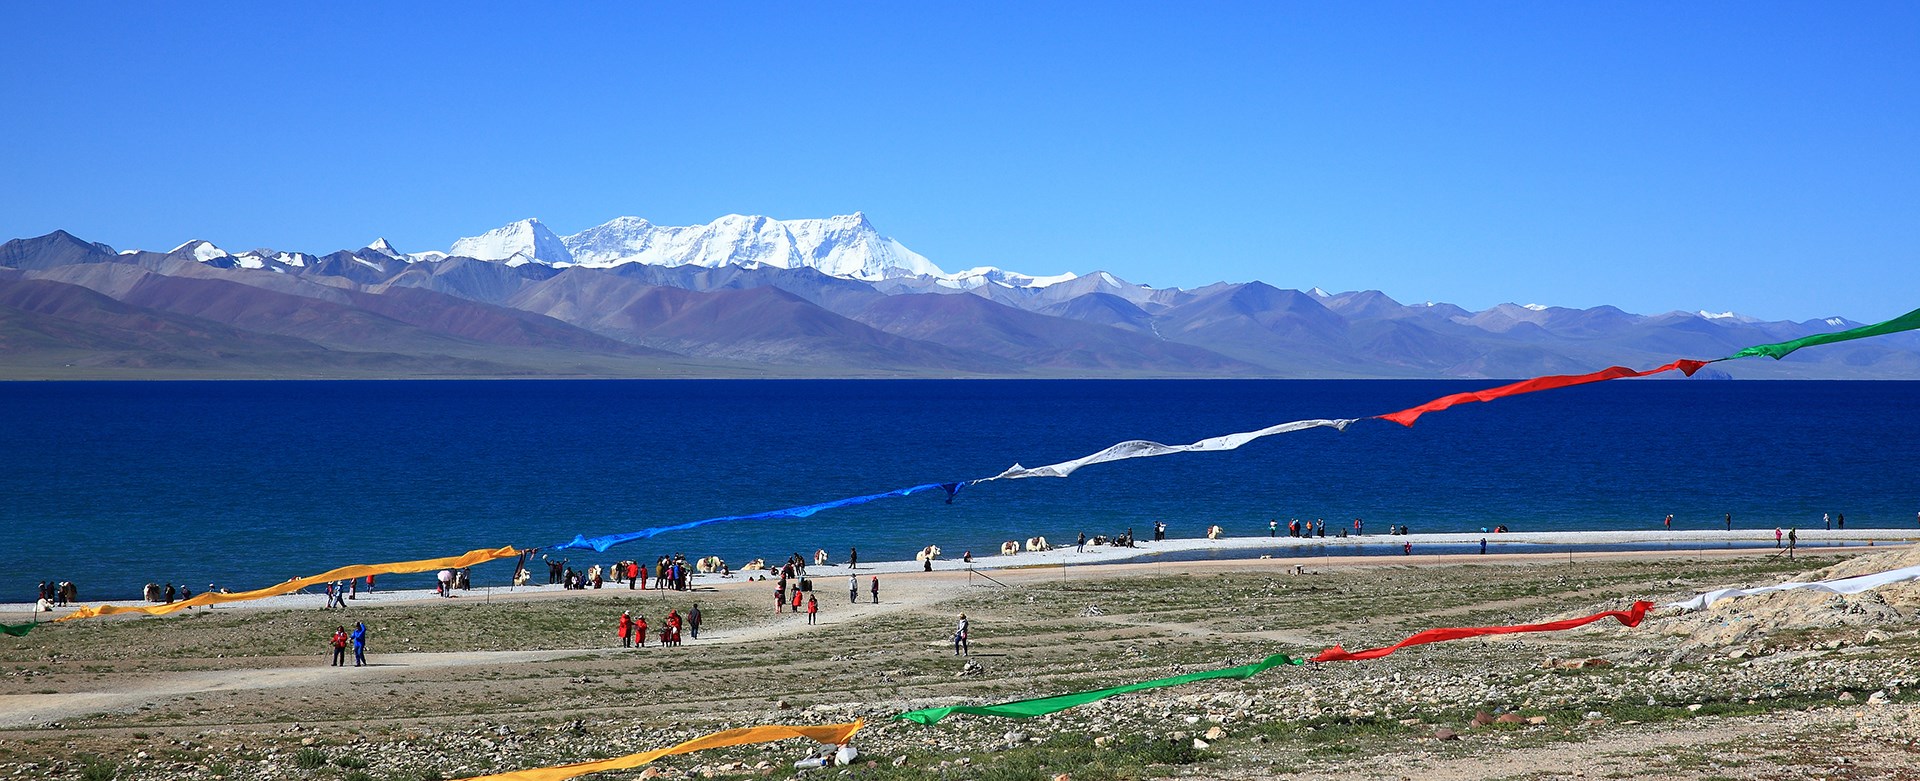 Discover Lhasa and Nam Tso Lake